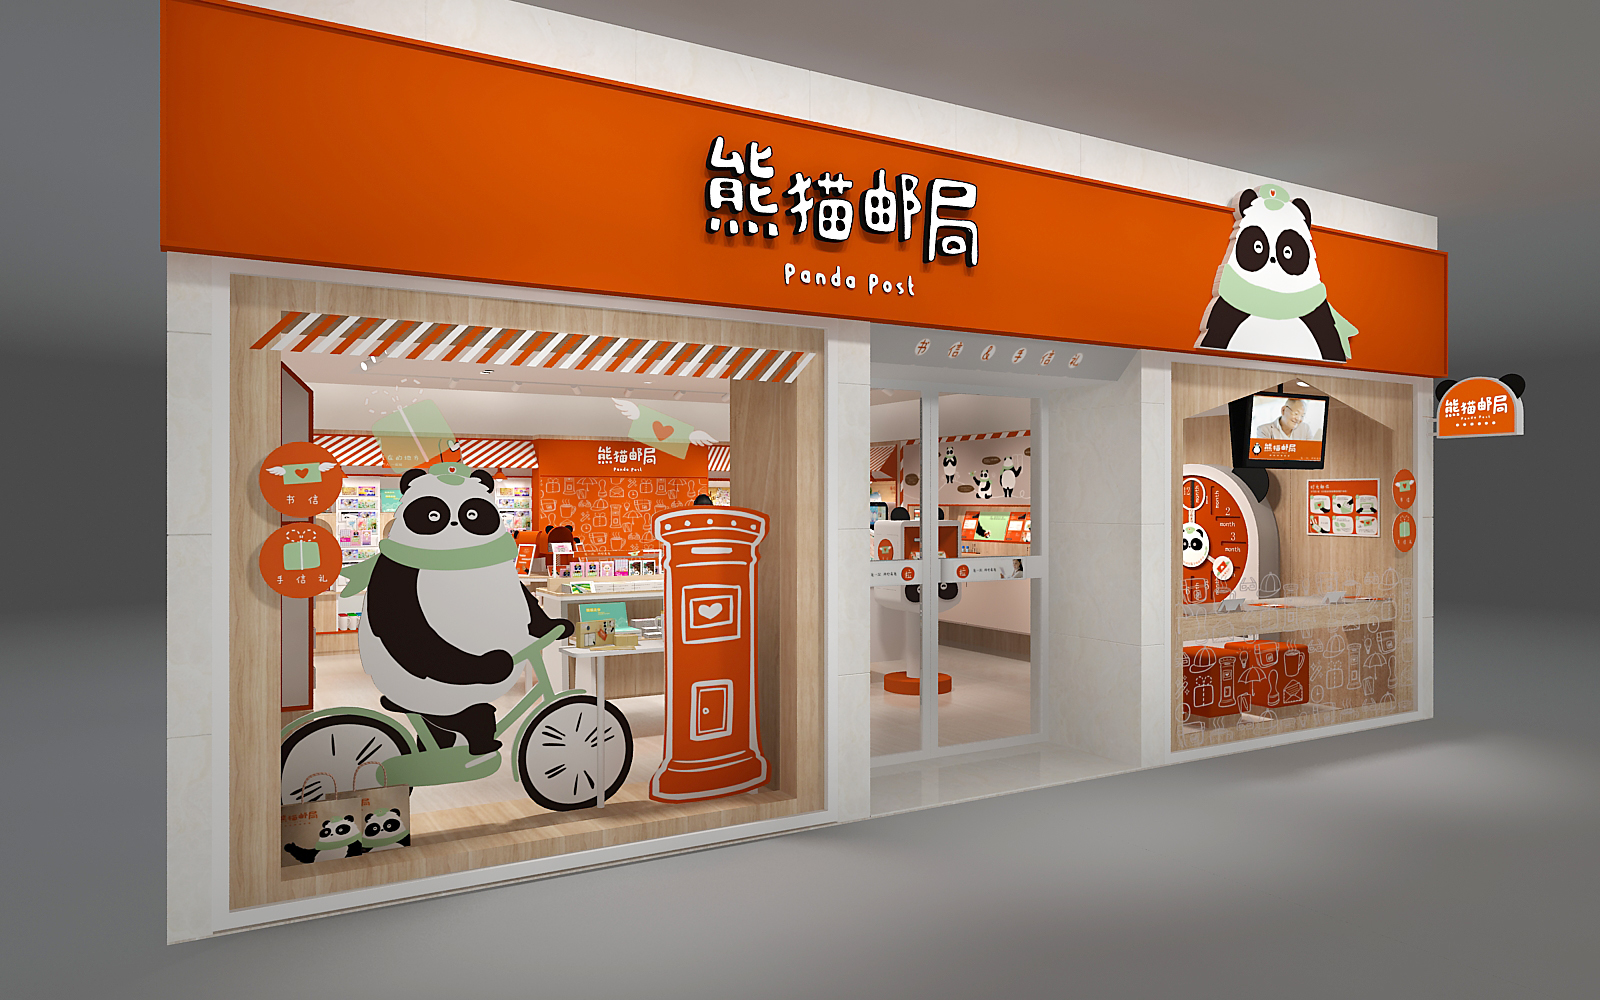 文创品牌设计 | 熊猫邮局,让中国邮政焕发新活力